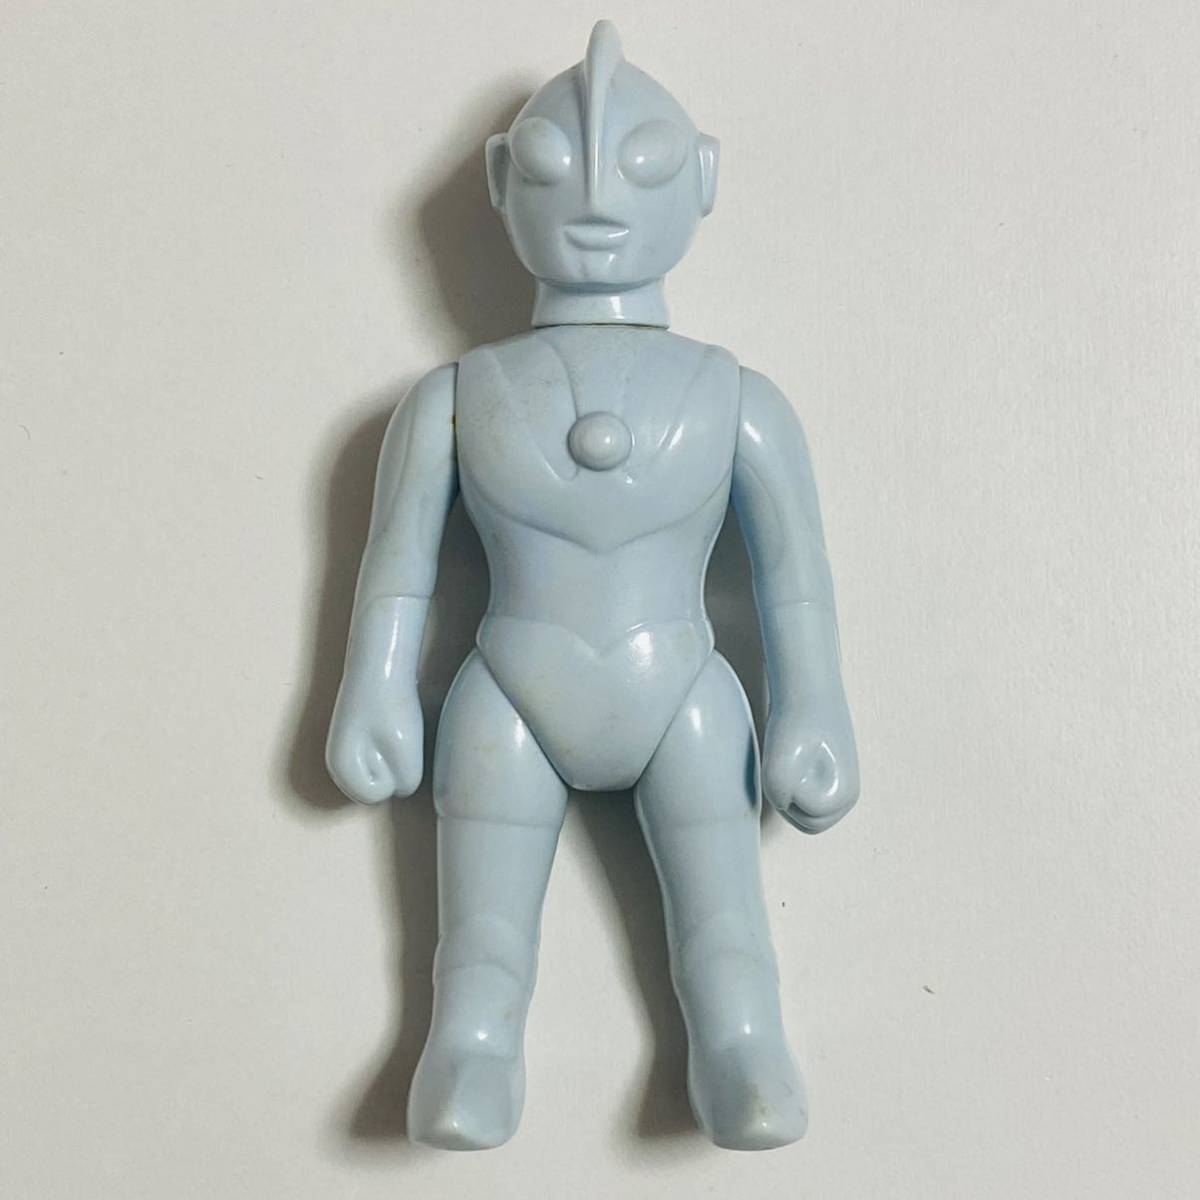 [ б/у товар ]Marmitma-mi летящий nipala baby Ultraman появление Ultraman &nise Ultraman не крашеный sofvi фигурка 